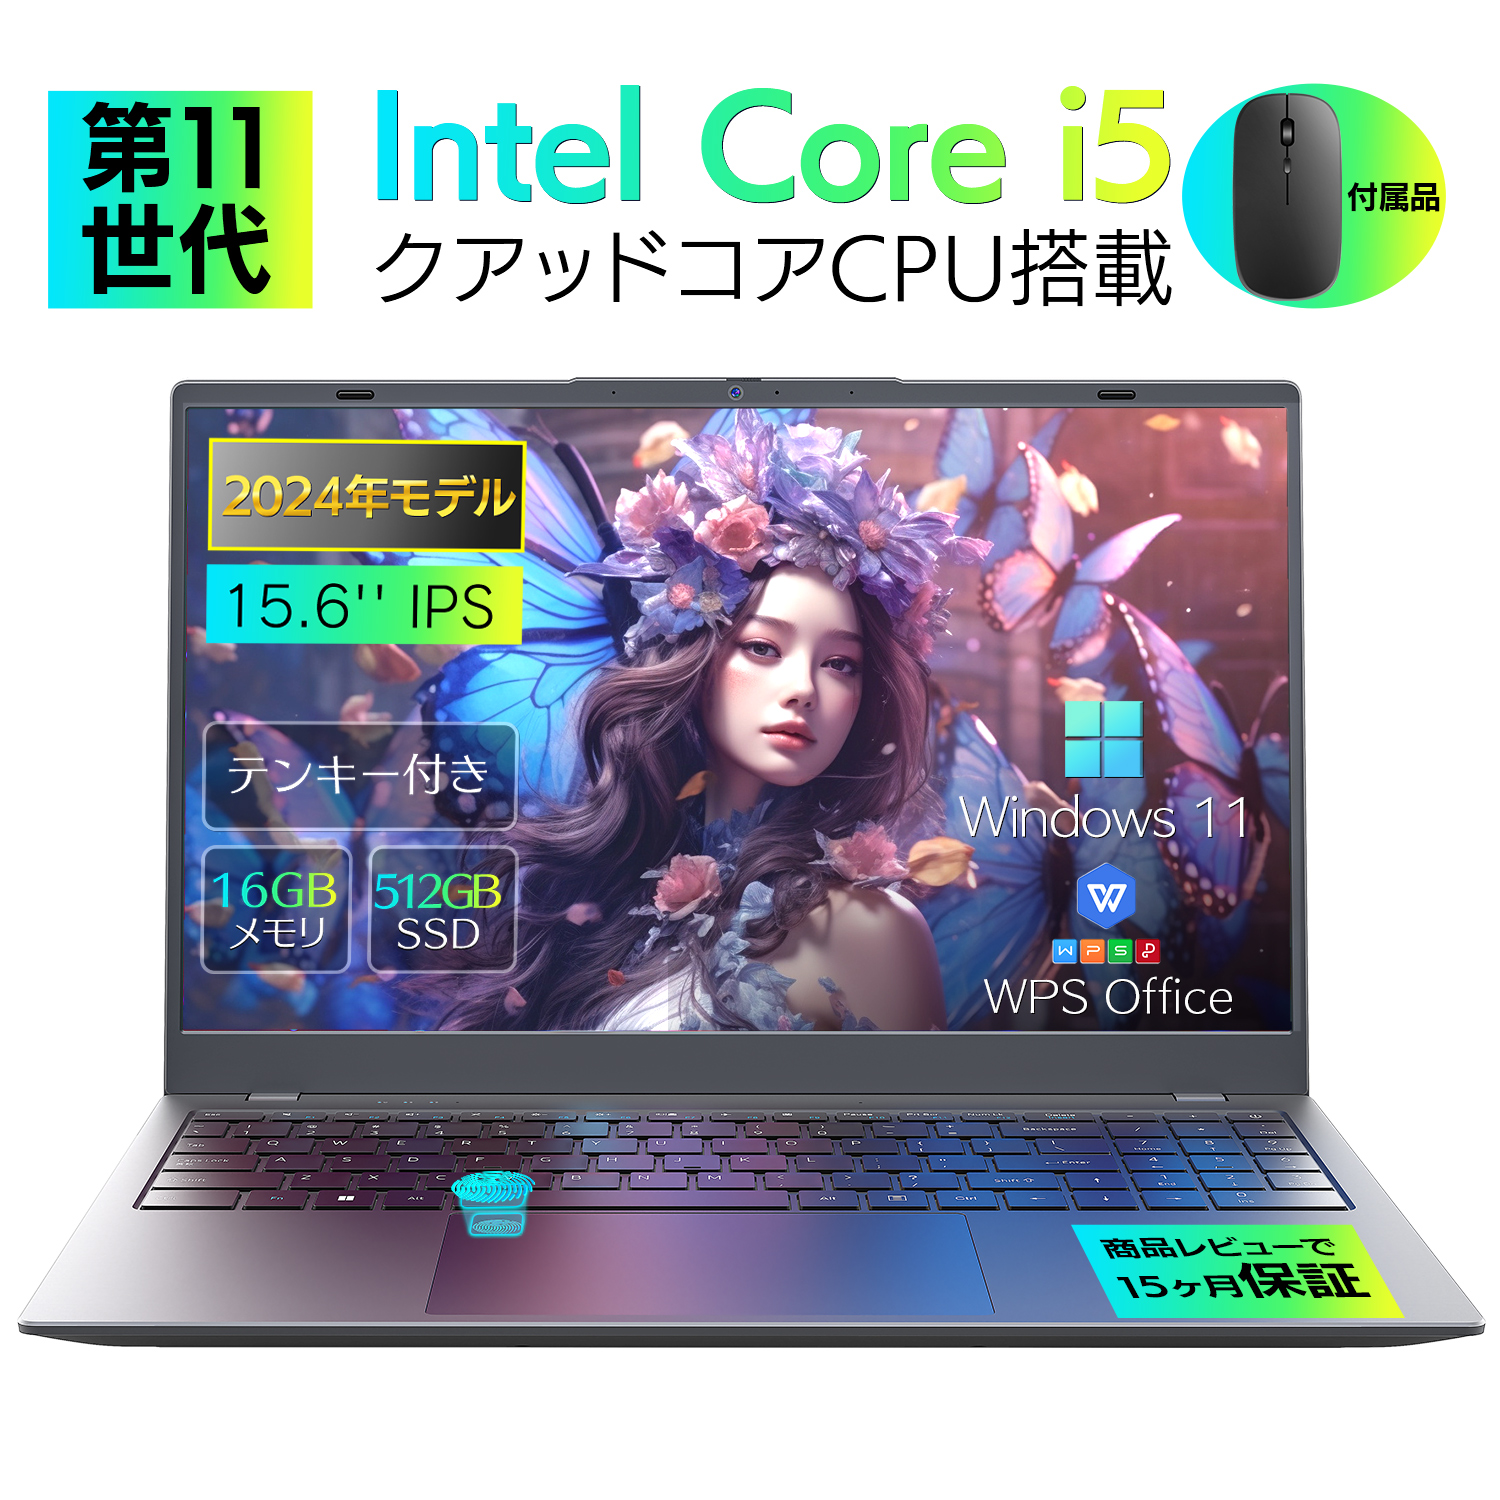 新品パソコン ノート office付き 15.6インチ Win11搭載 インテル Corei5-1035G DDR5 メモリー:16GB/高速SSD:512GB/3.7GHz テンキー付/指紋認証付き  NC15NTT｜sowa-shop